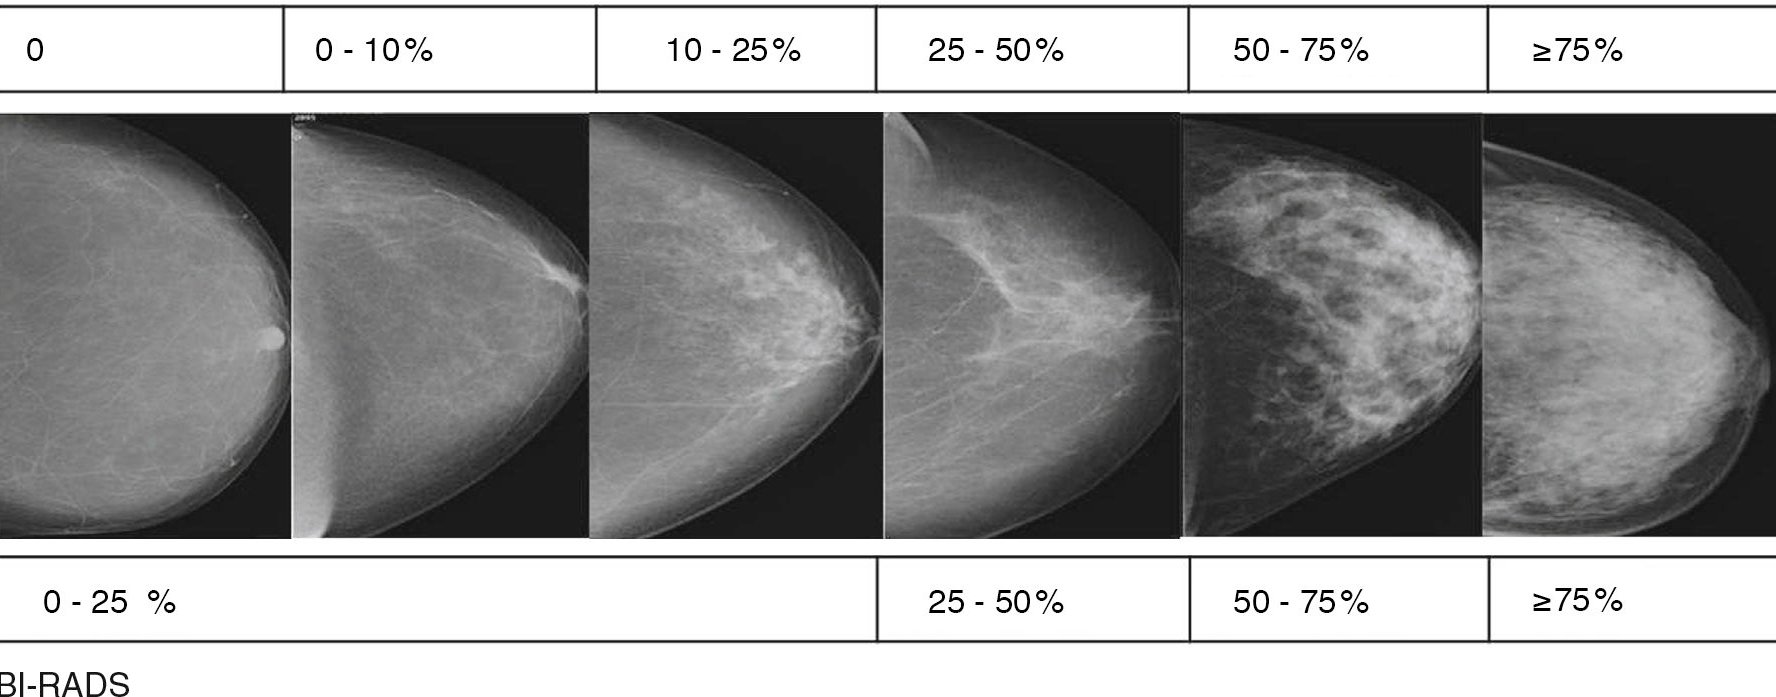 Bi rads категория 3. Маммография молочных желез bi rads 4. Фиброзно кистозная мастопатия молочной железы bi-rads-4a. Маммография классификация bi-rads. Bi-rads 3 молочной железы маммограмма.